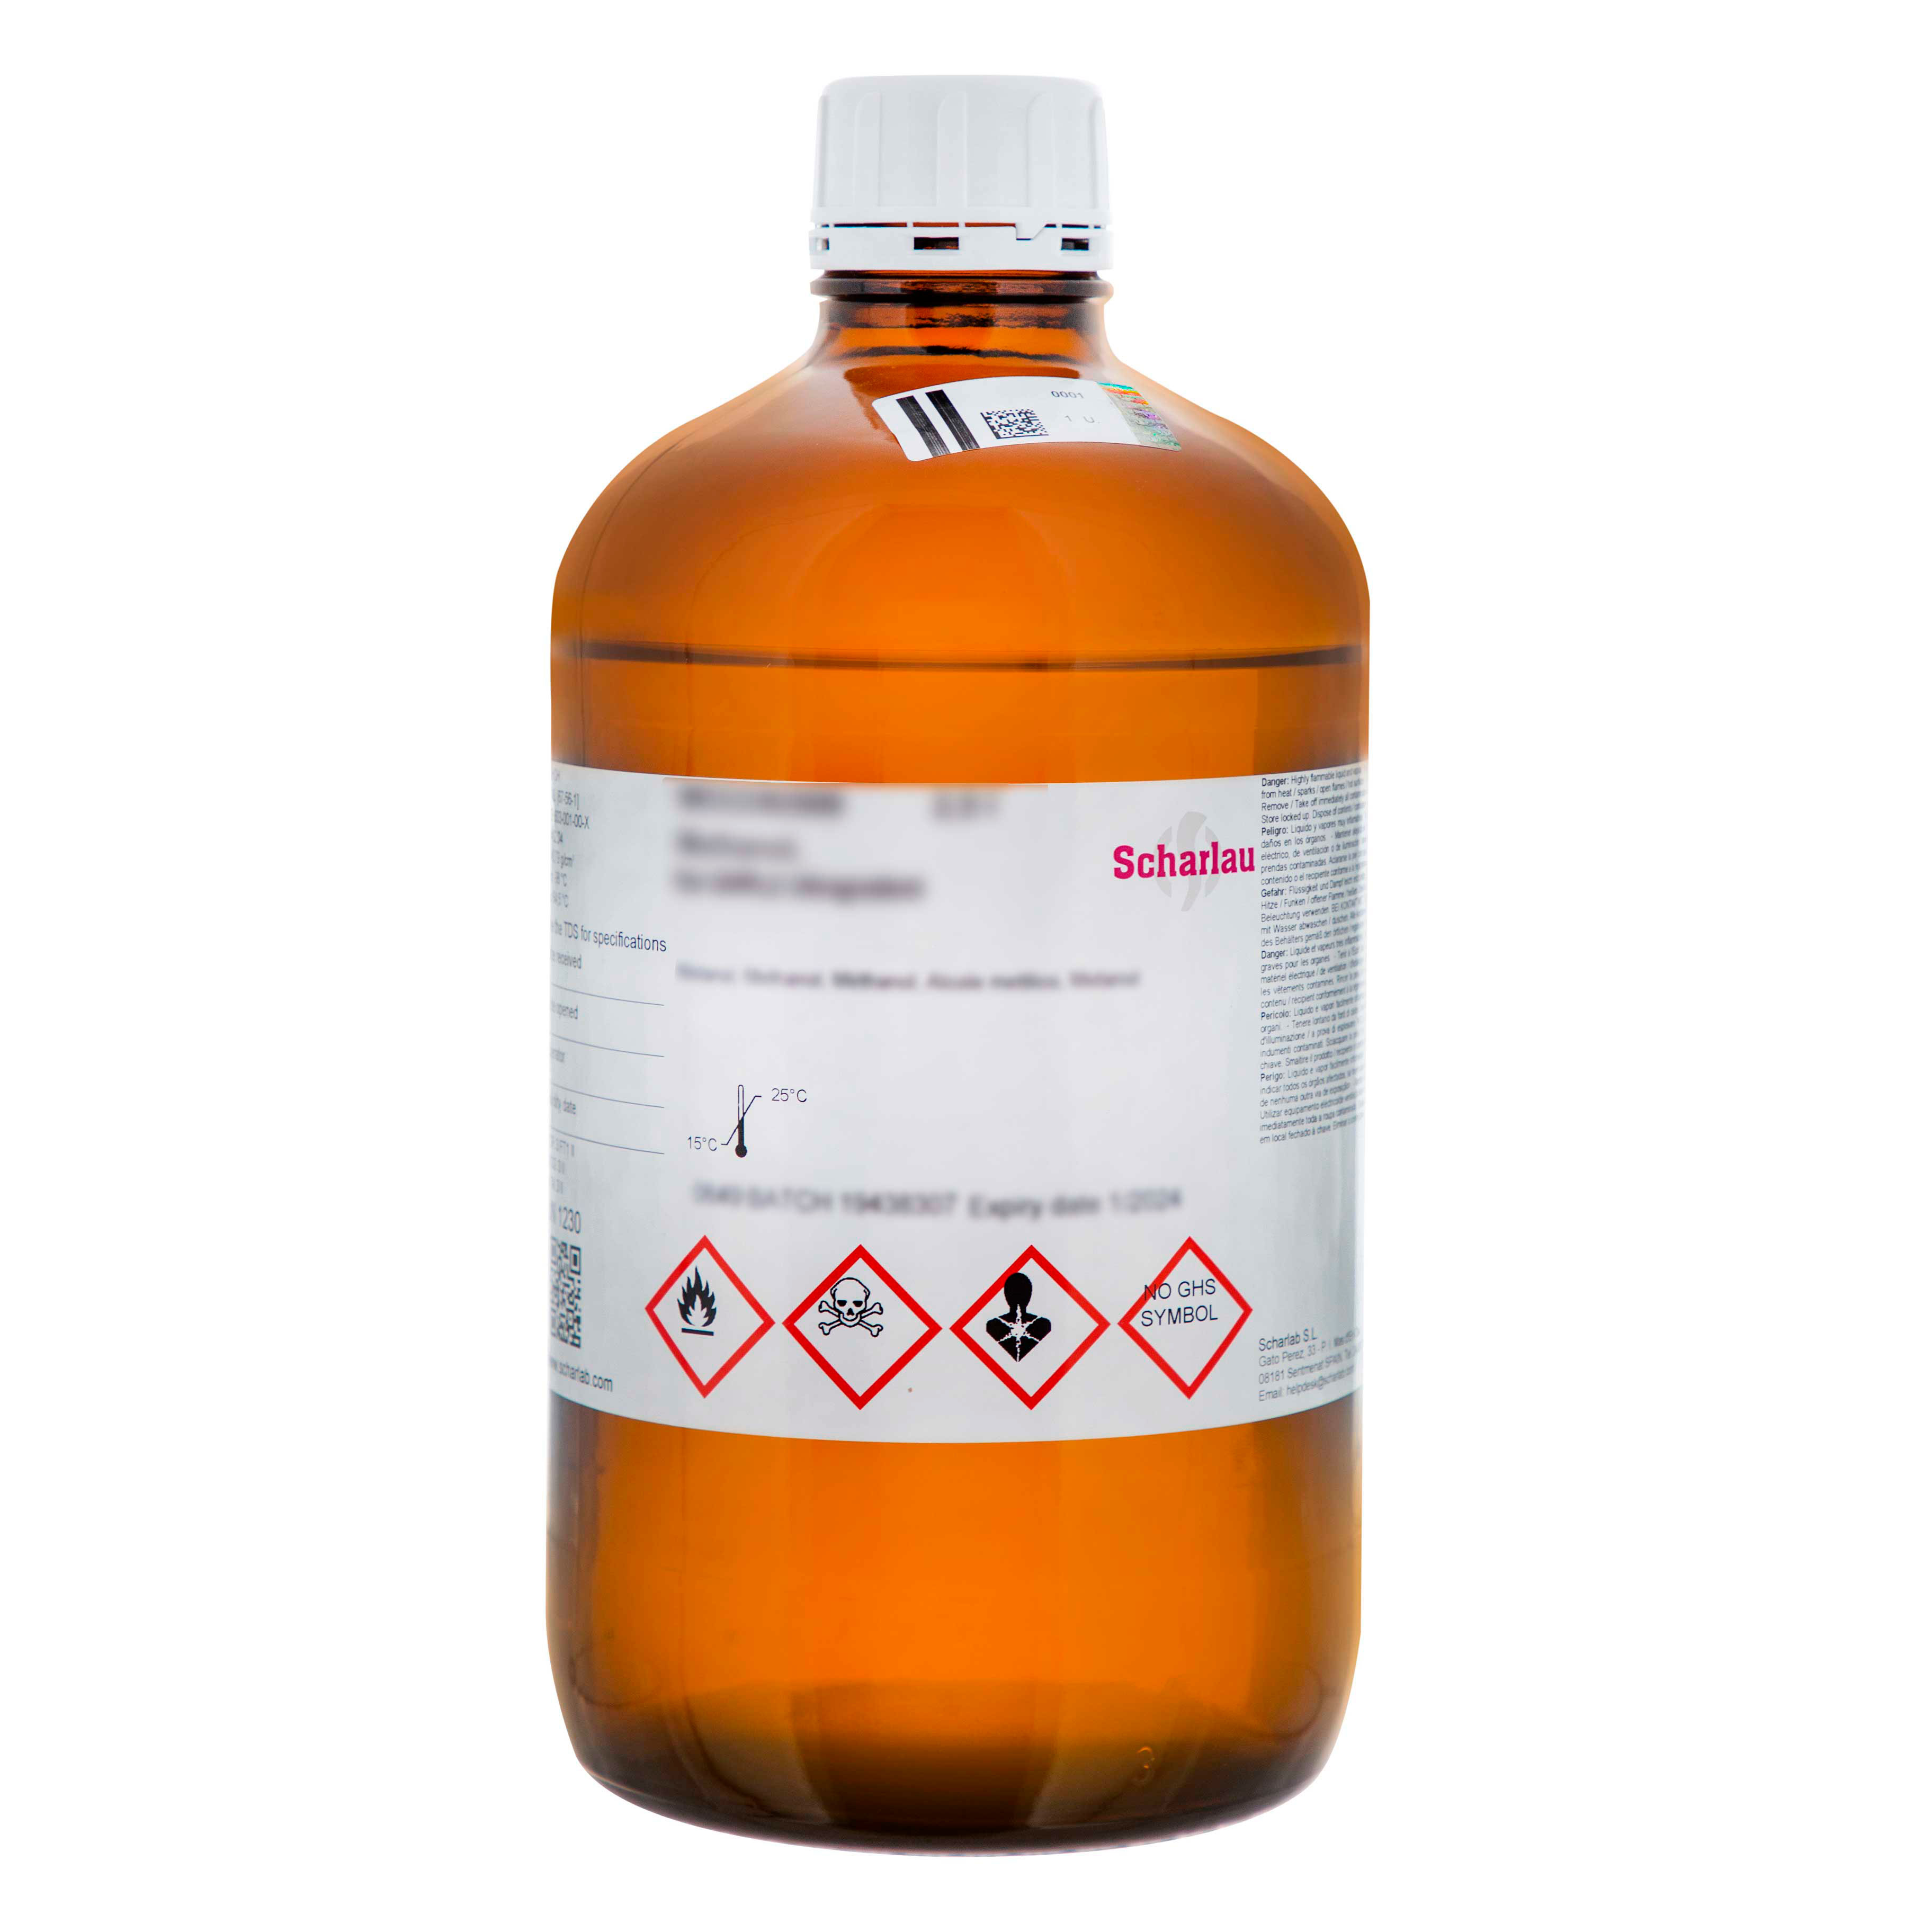 Éter dietílico, Pharmpur®, Ph Eur, BP, estabilizado con aprox. 7 ppm de 2,6-Di-terc-butil-4-metilfenol (BHT)